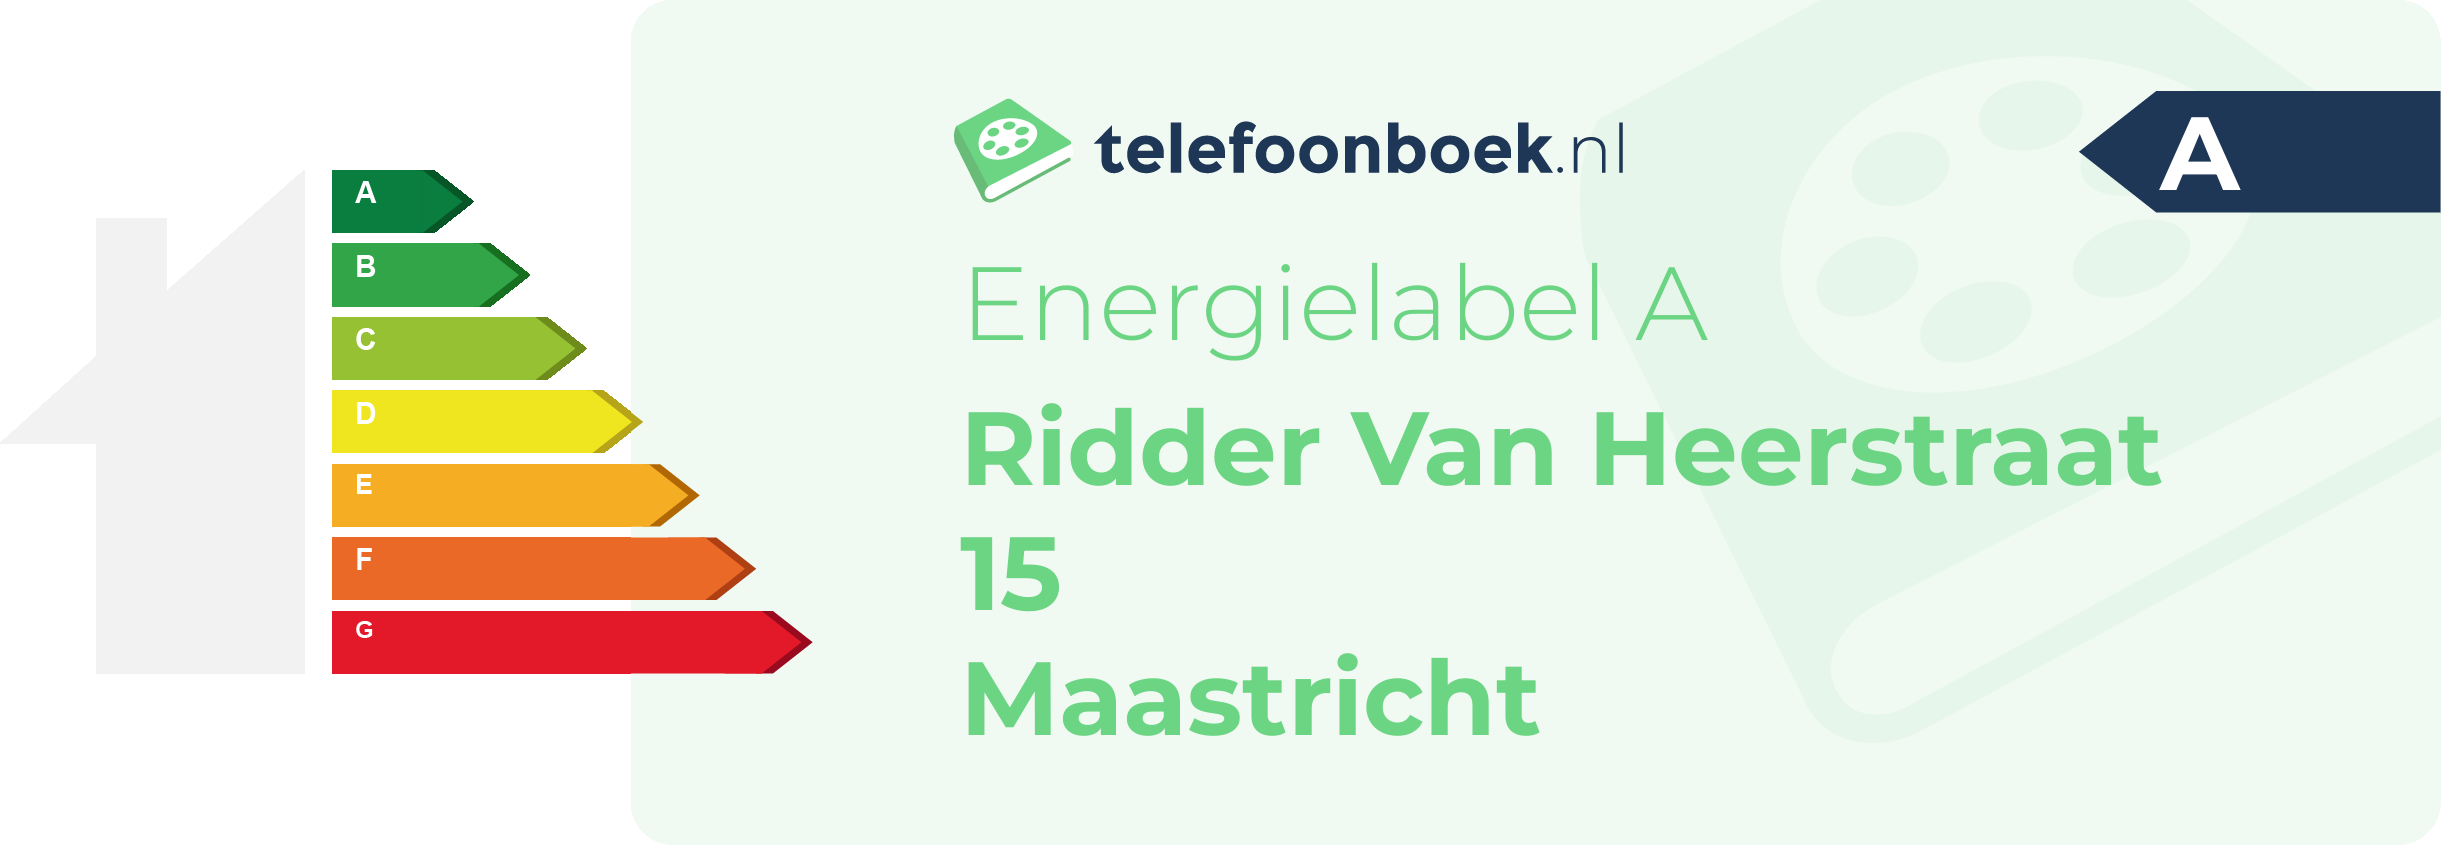 Energielabel Ridder Van Heerstraat 15 Maastricht